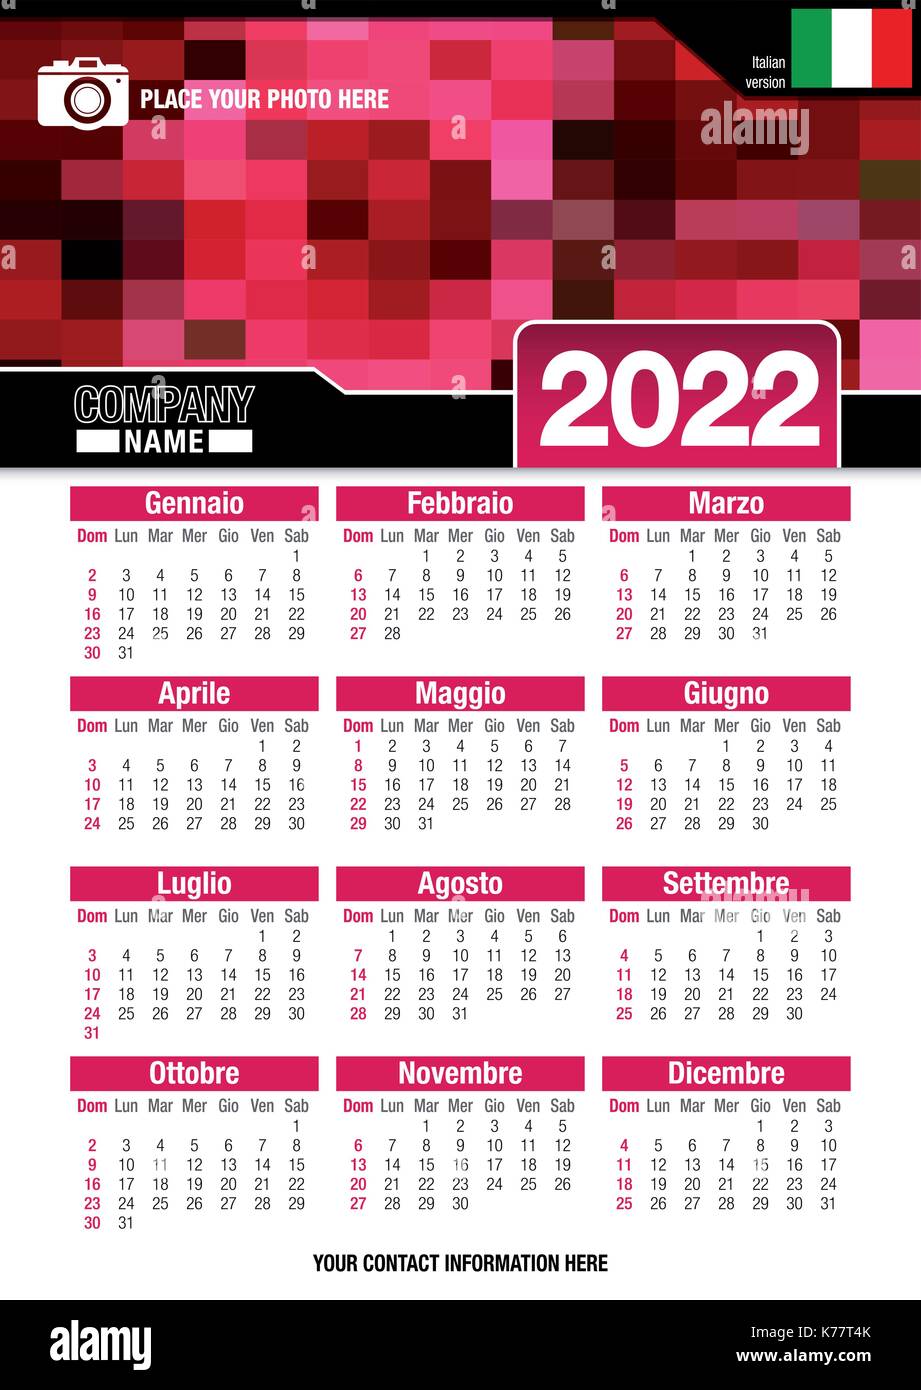 Utile calendario da parete 2022 con design di colori rosso mosaico. Formato A4 verticale. Dimensioni: 210mm x 297mm. Versione italiana - immagine vettoriale Illustrazione Vettoriale